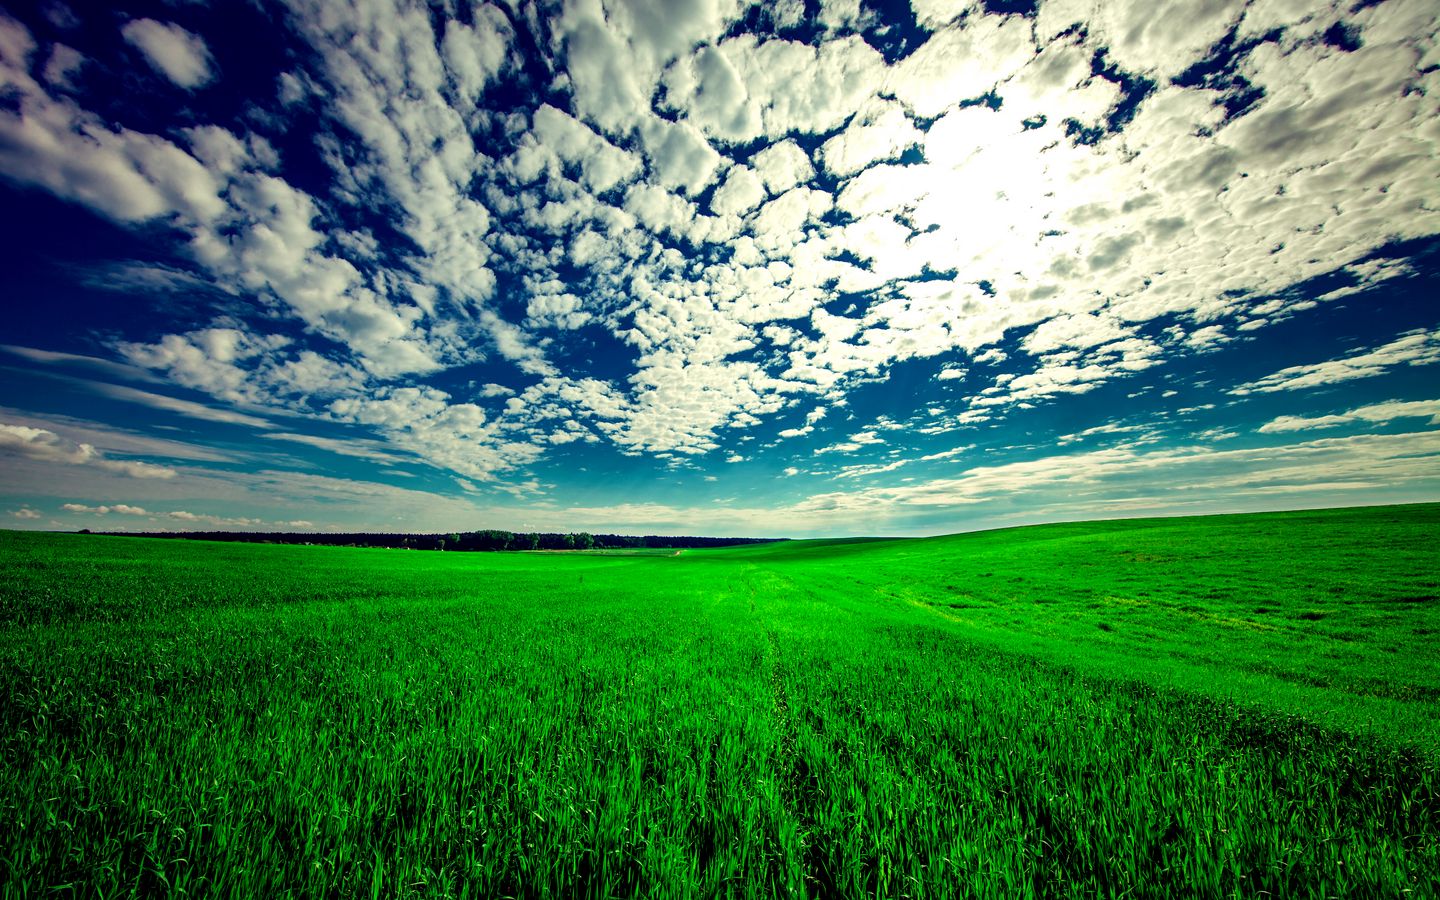 Download wallpaper 1440x900 field, sky, grass, clouds, green, summer widescreen 16:10 HD background